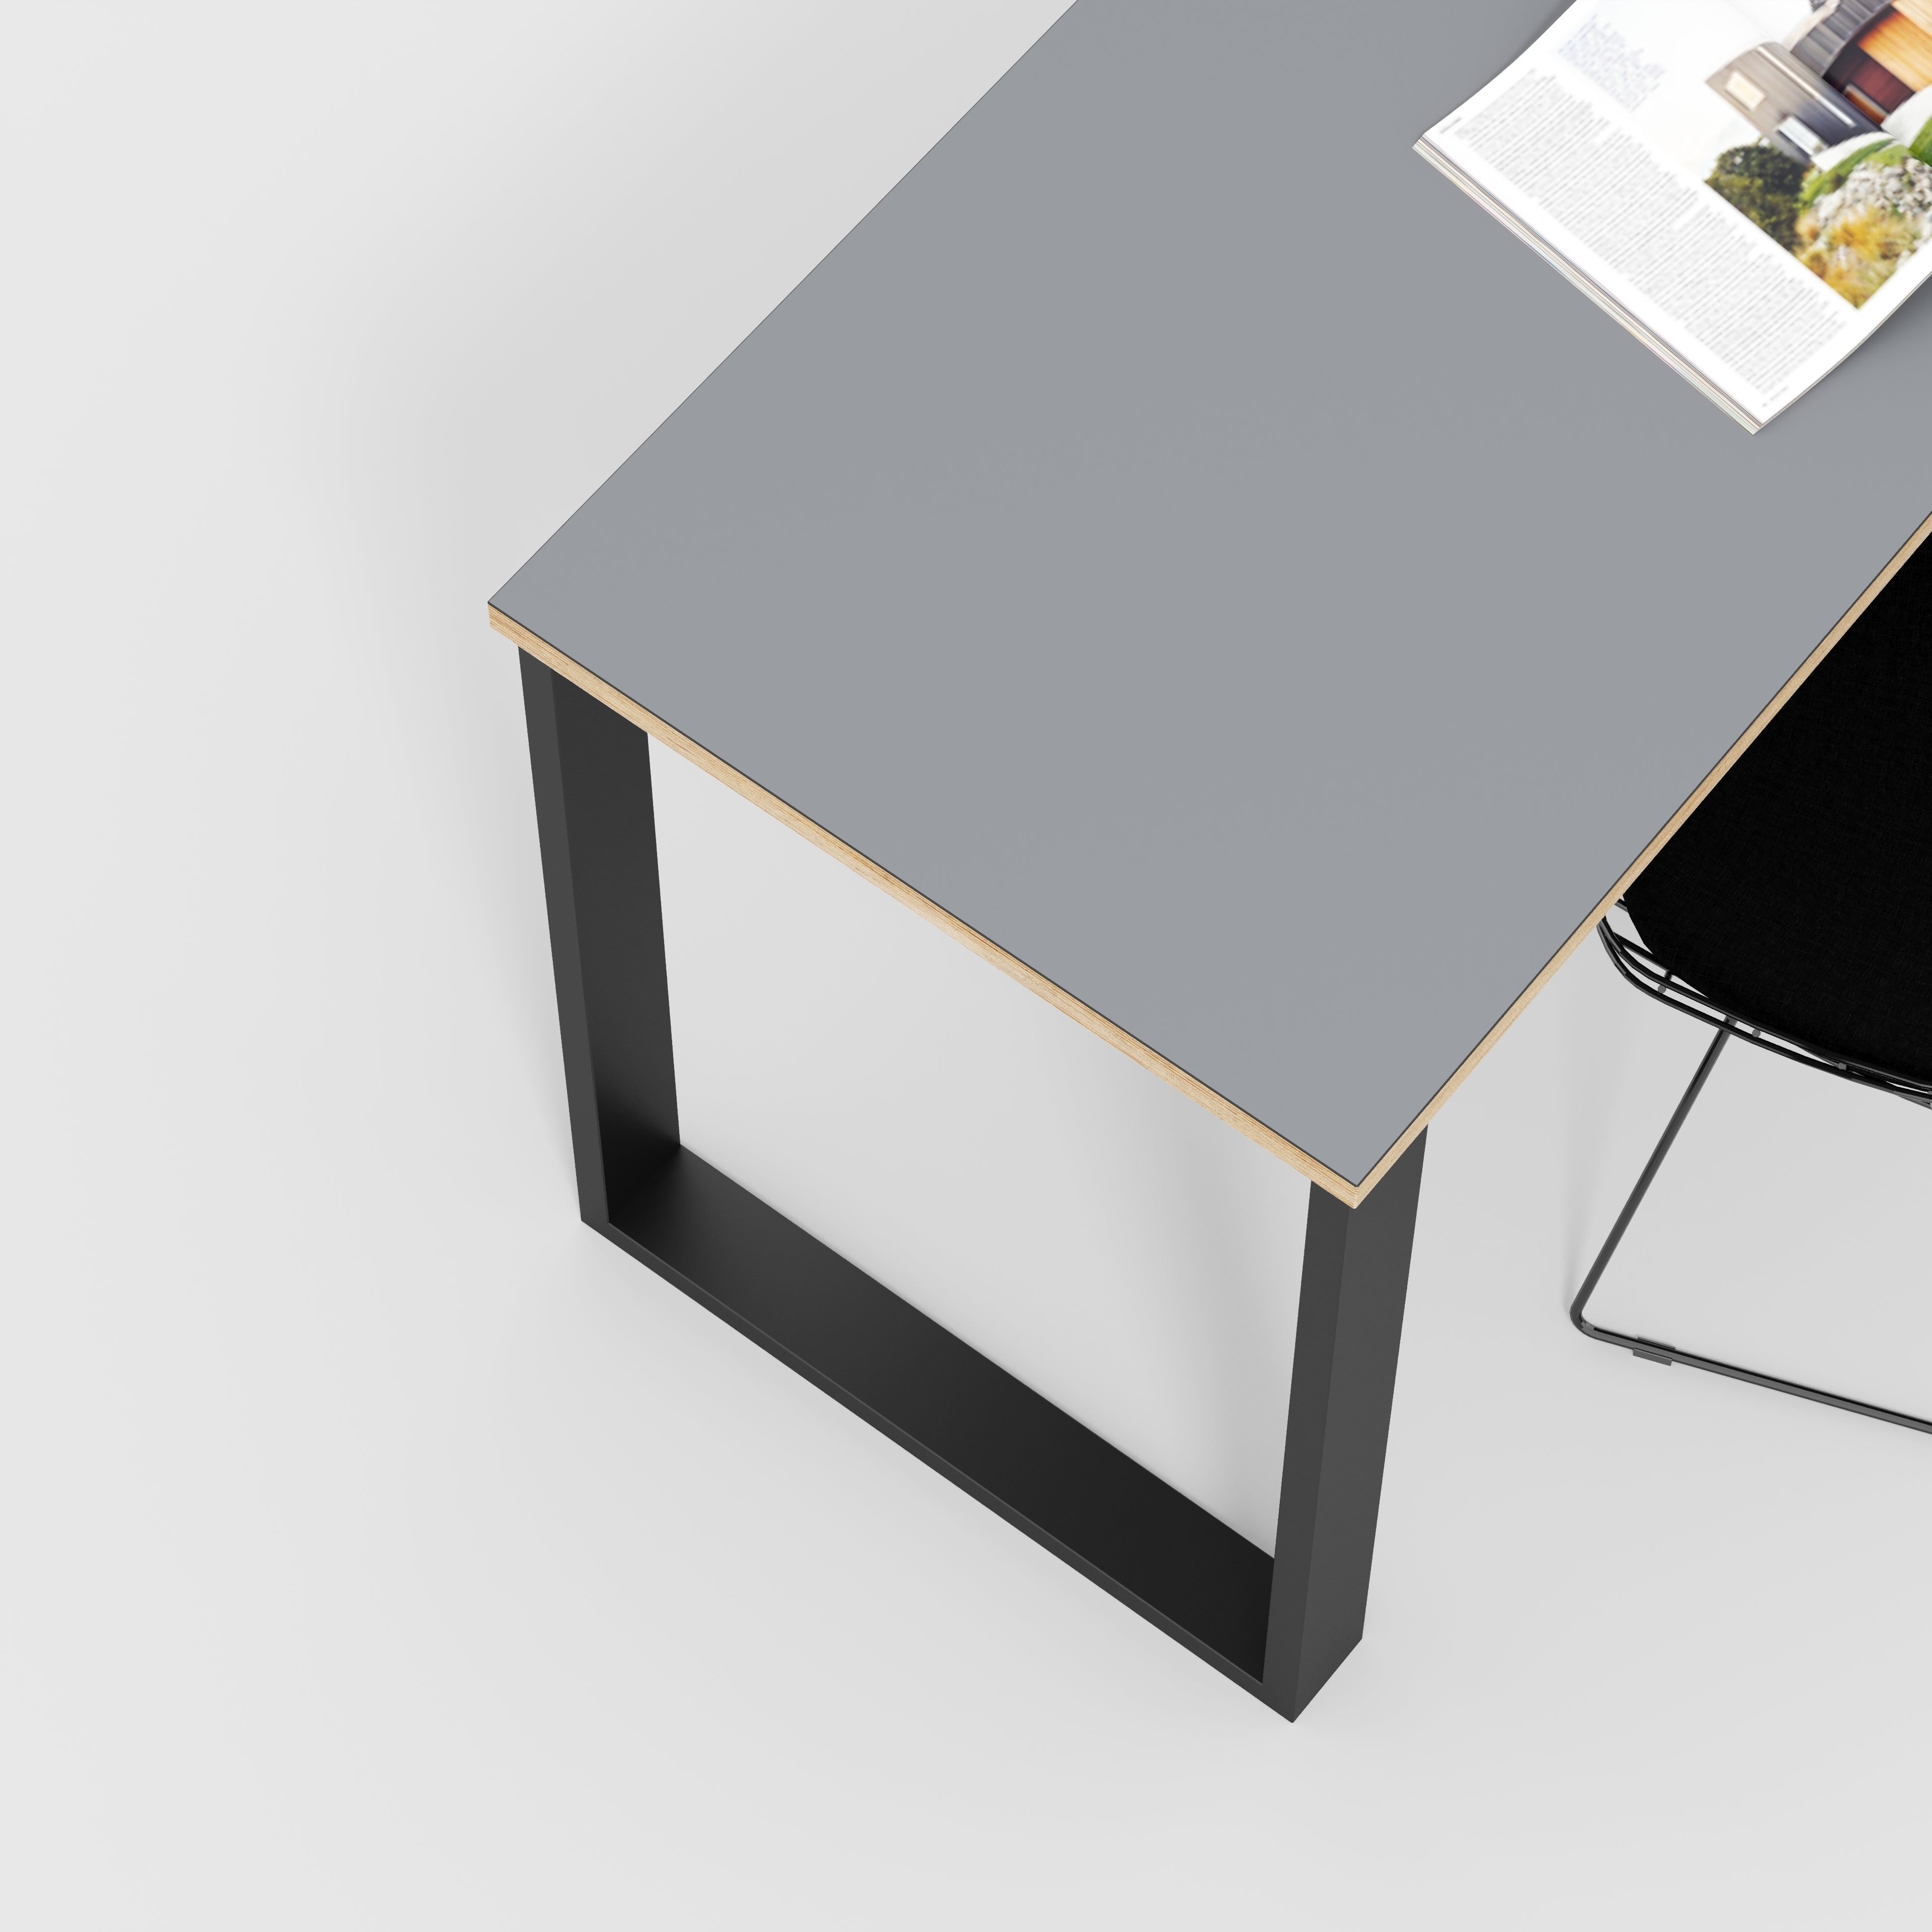 Desk with Black Industrial Legs - Formica Tornado Grey - 1600(w) x 800(d) x 735(h)